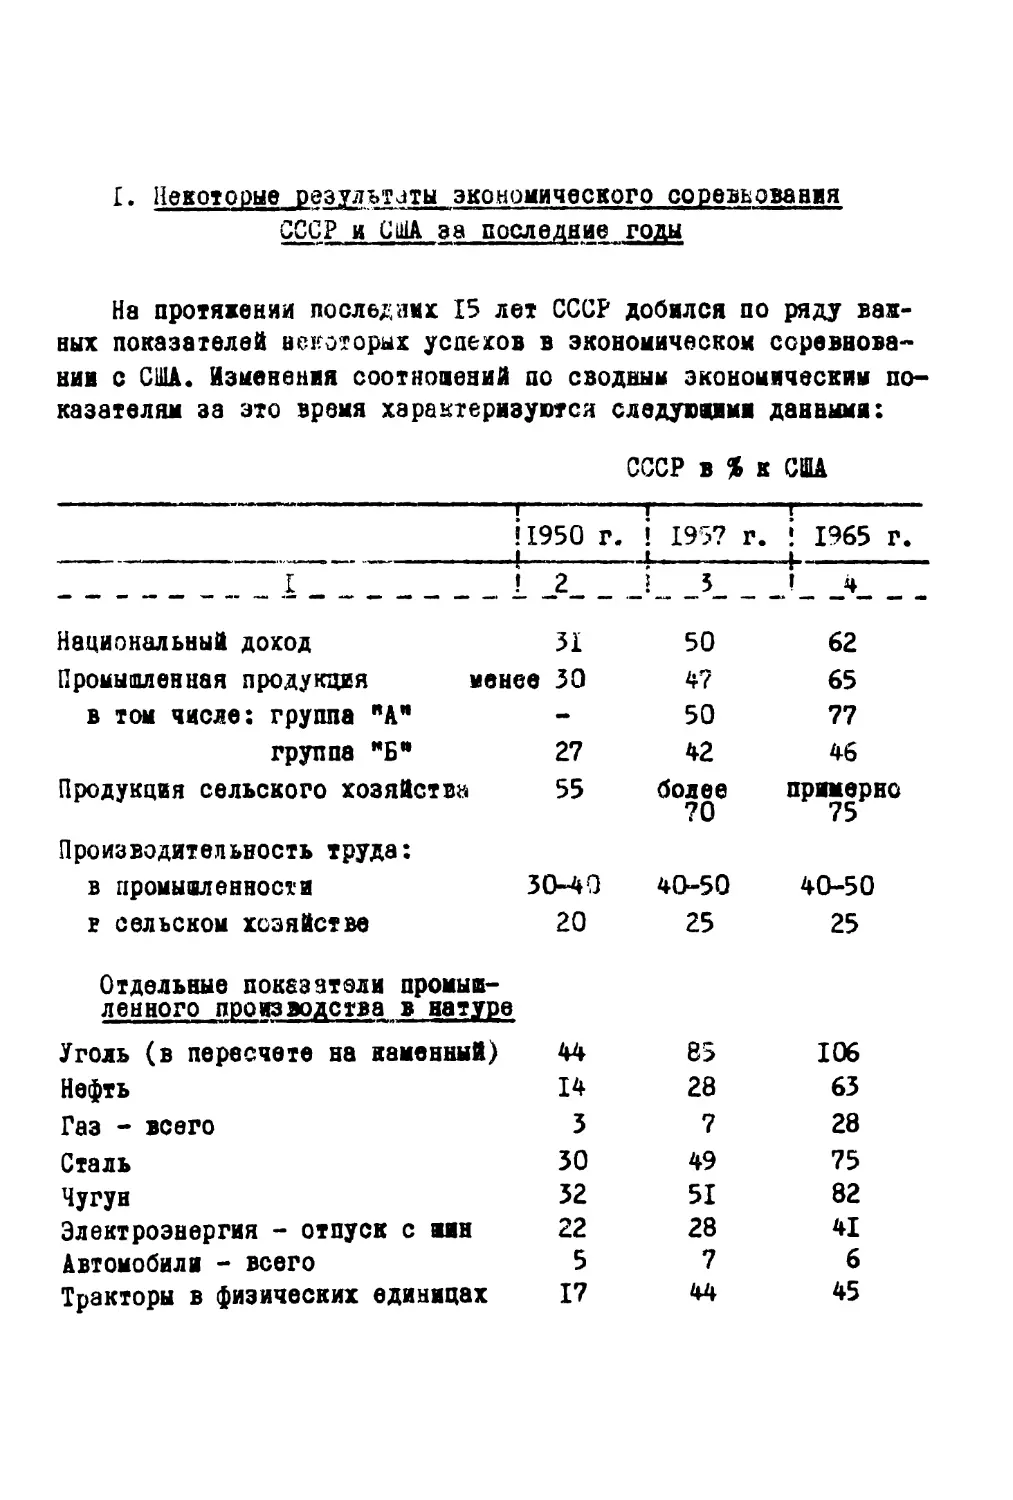 1. Некоторые результаты экономического соревнования СССР и США за последние годы